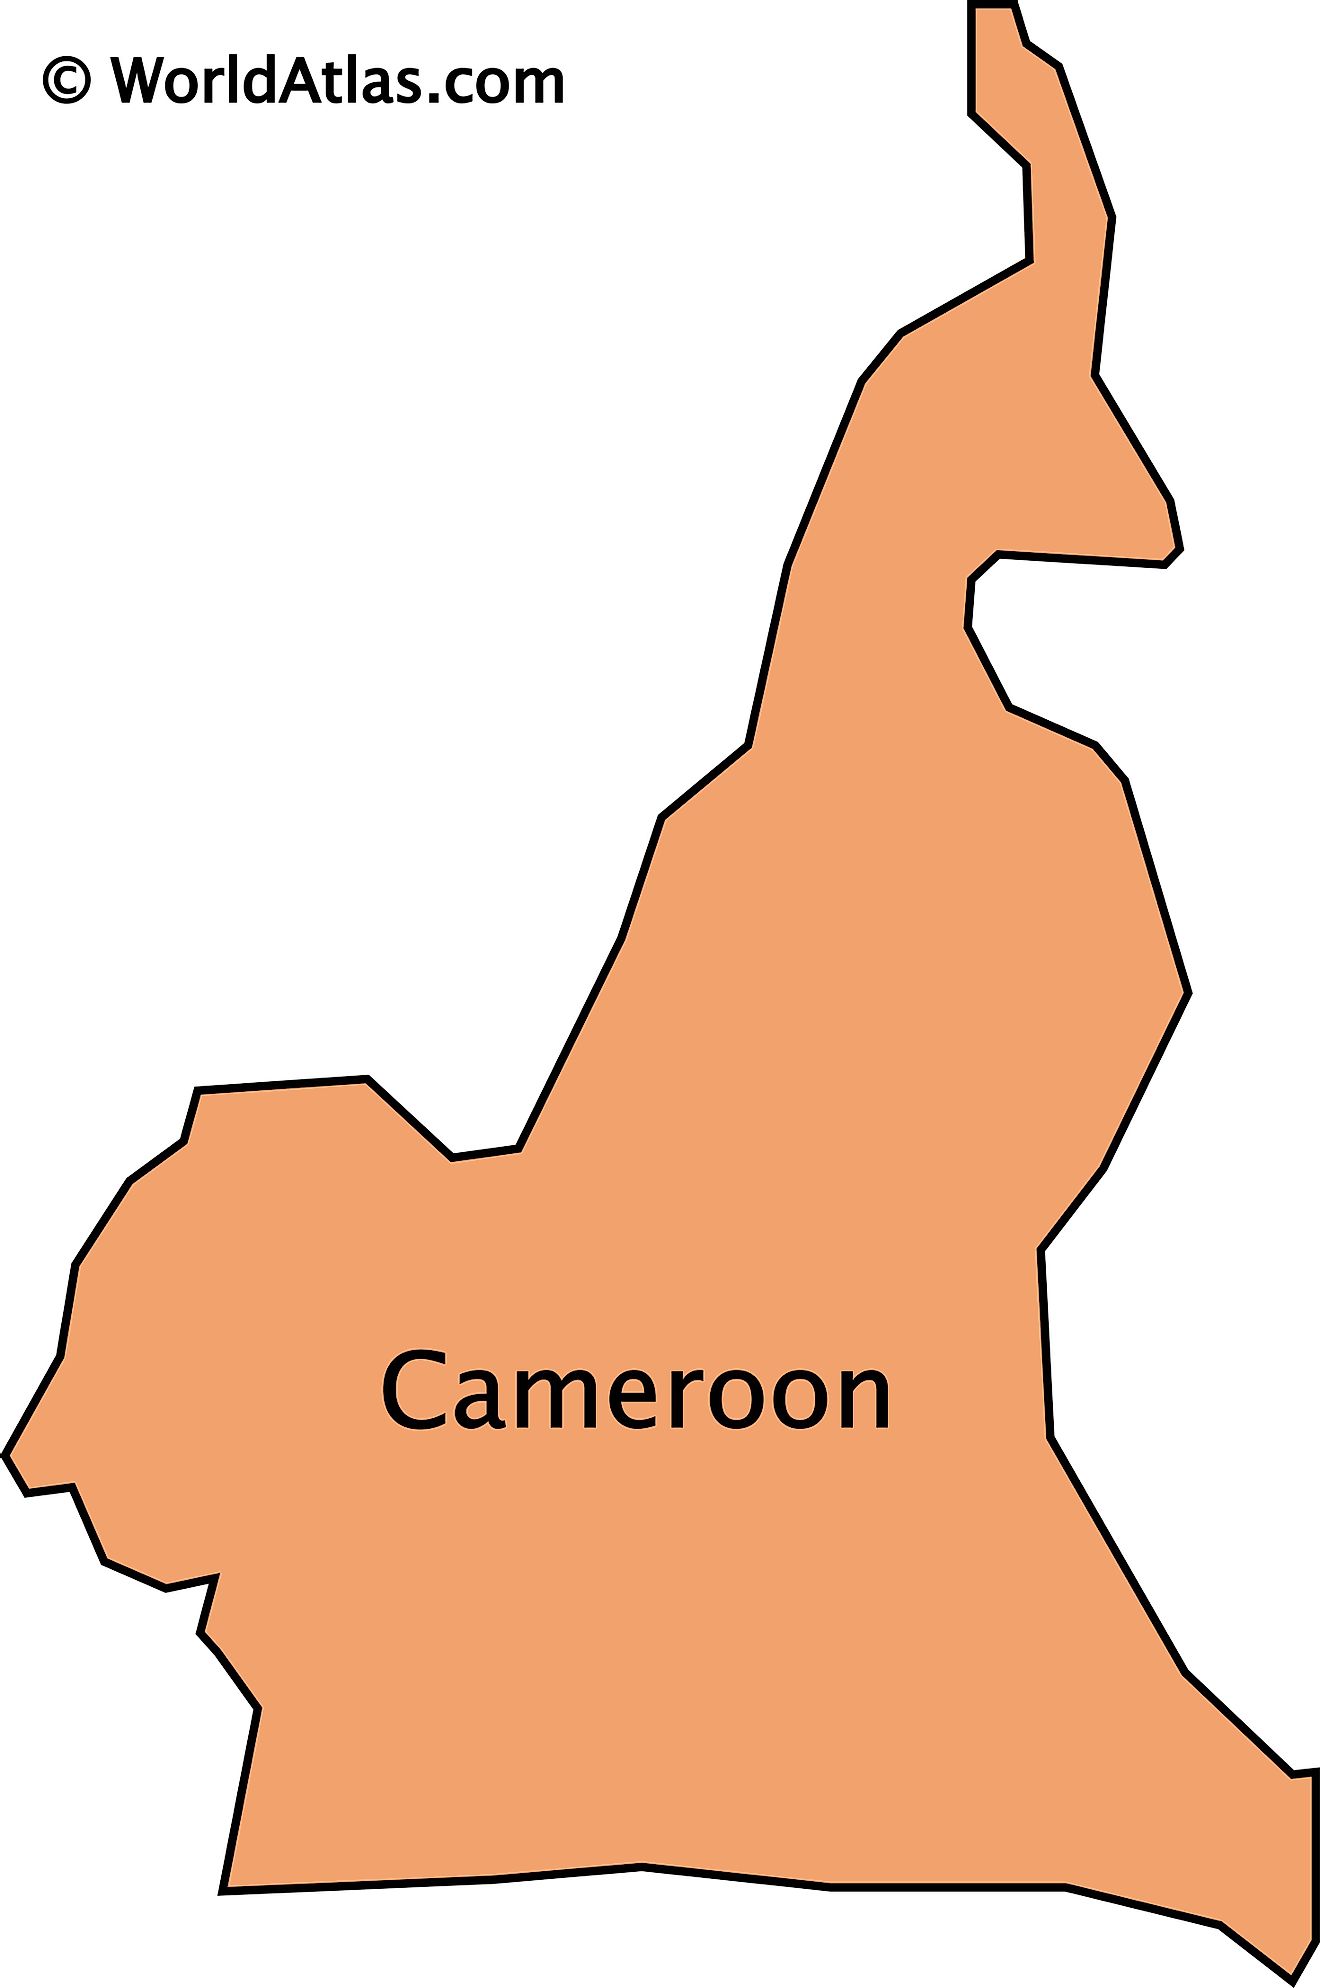 Mapa de contorno de Camerún